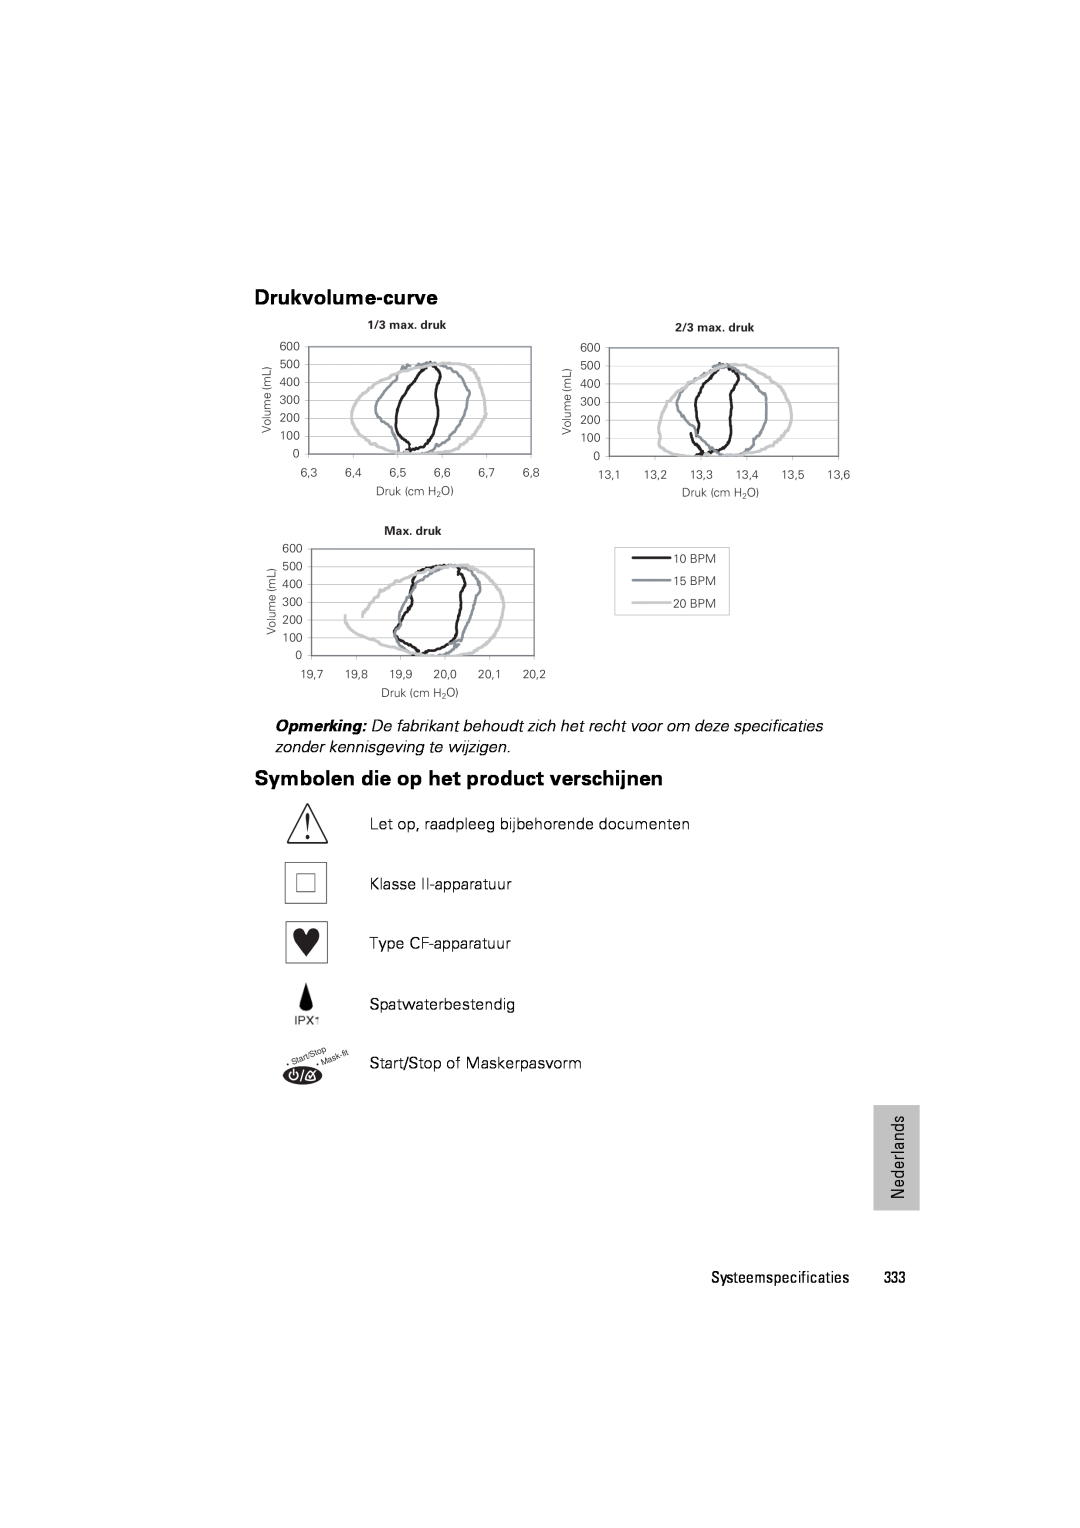 ResMed III & III ST Drukvolume-curve, Symbolen die op het product verschijnen, Let op, raadpleeg bijbehorende documenten 